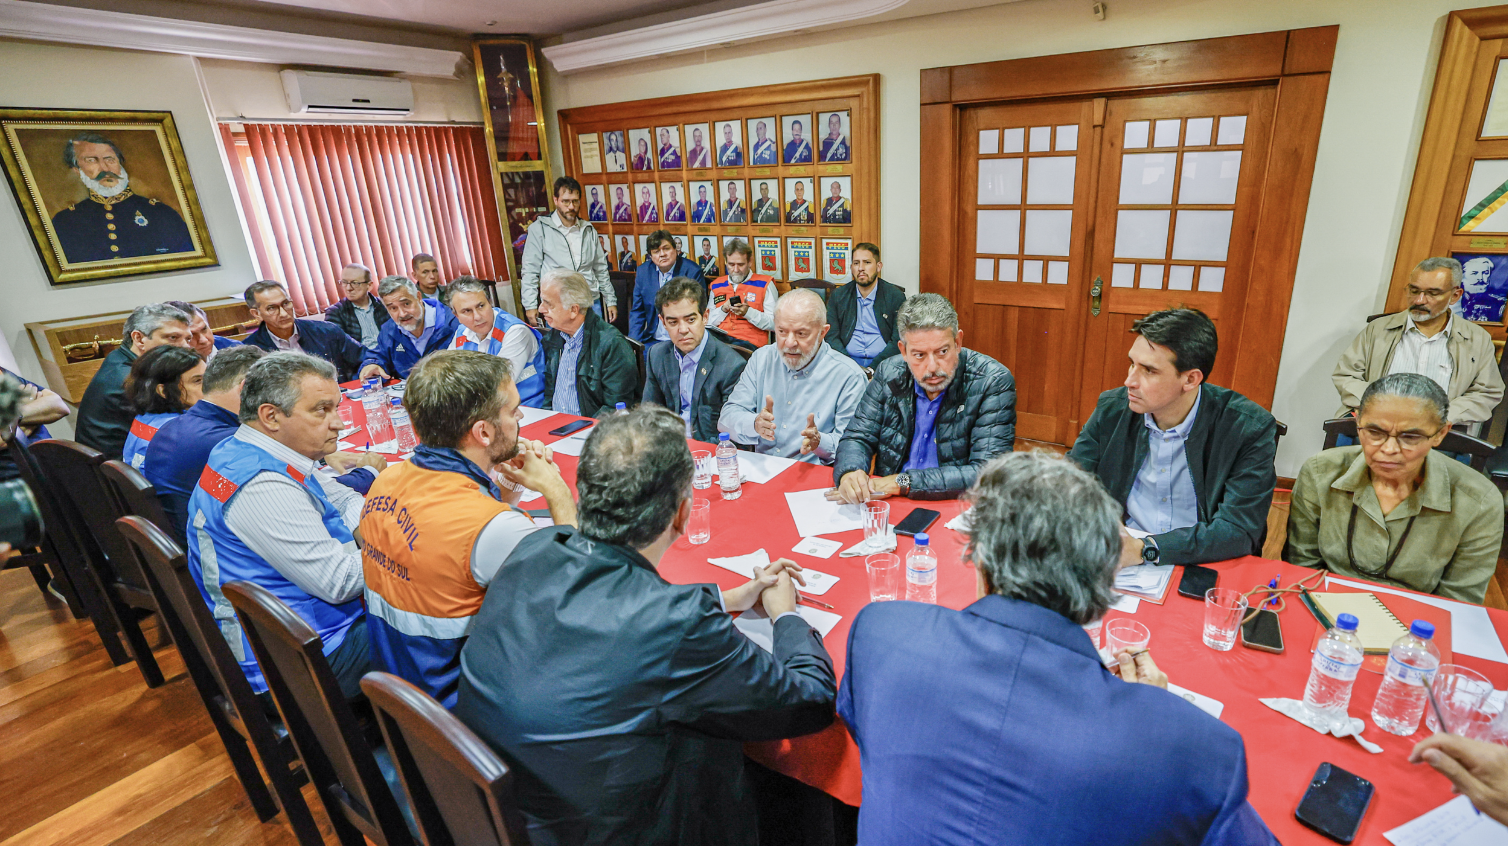 Principais lideranças nacionais foram reunidas por Lula para ajudar o estado. Foto: Ricardo Stuckert